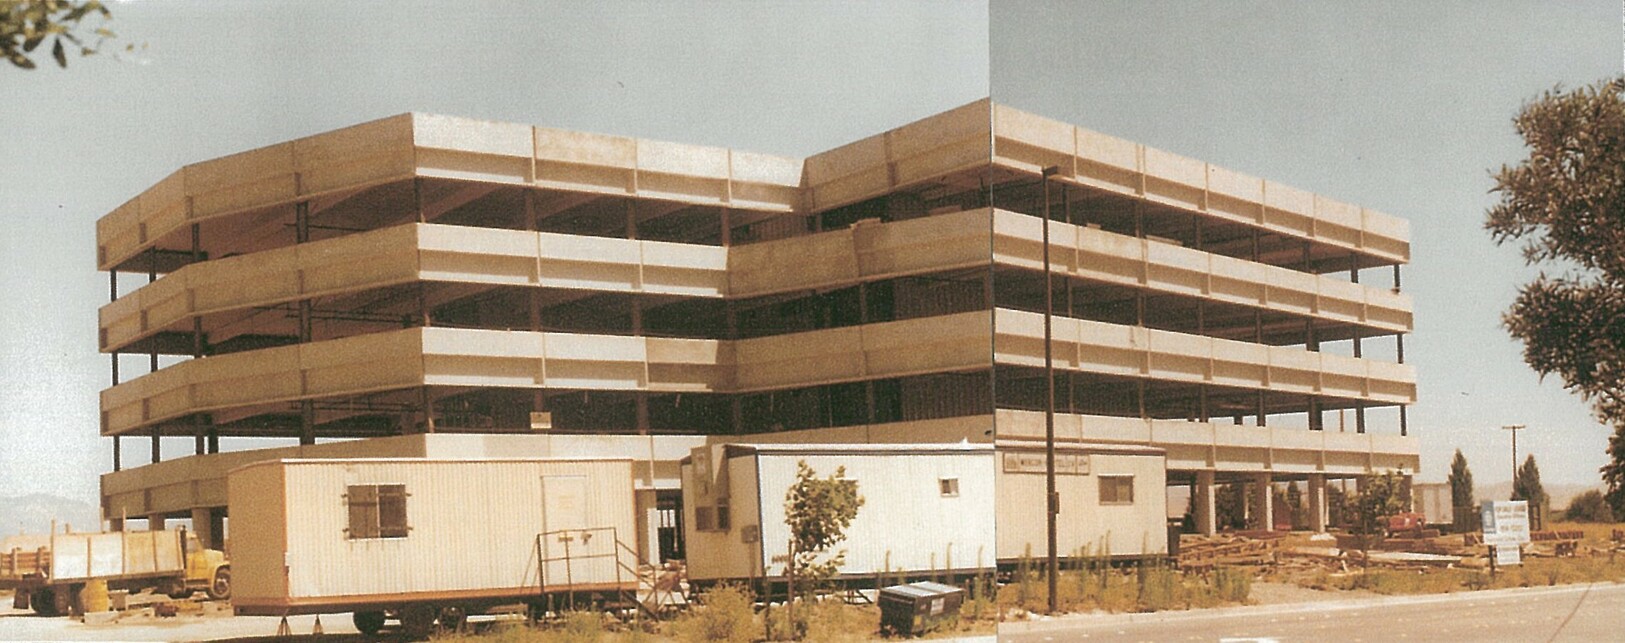 Pleasanton Gateway, Pleasanton, California, 1982, irodaházak